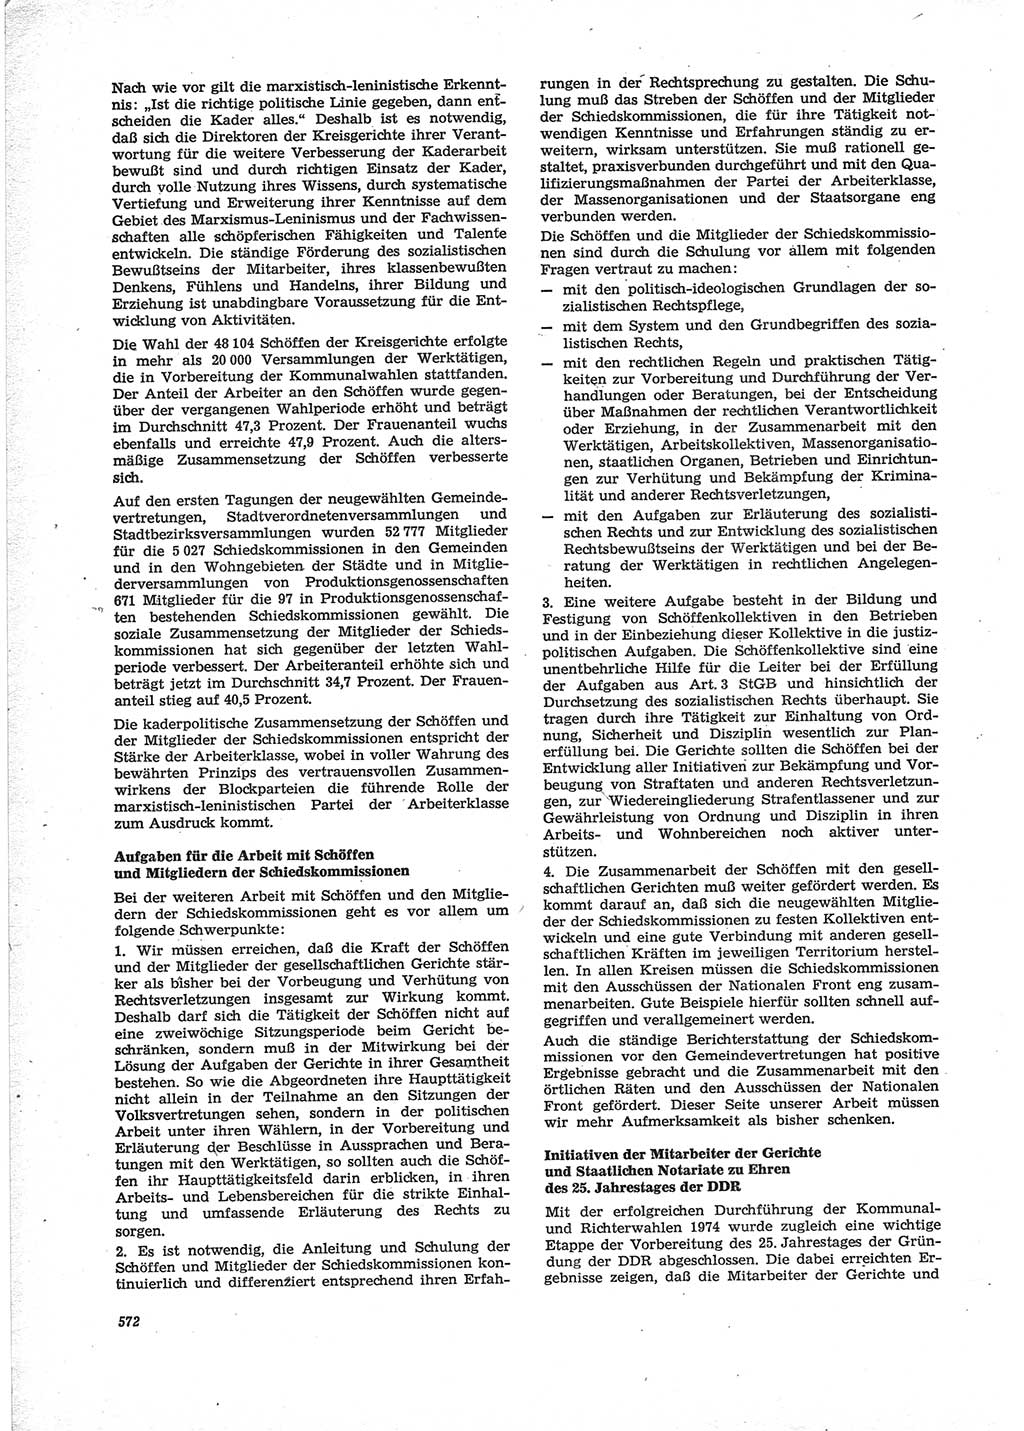 Neue Justiz (NJ), Zeitschrift für Recht und Rechtswissenschaft [Deutsche Demokratische Republik (DDR)], 28. Jahrgang 1974, Seite 572 (NJ DDR 1974, S. 572)